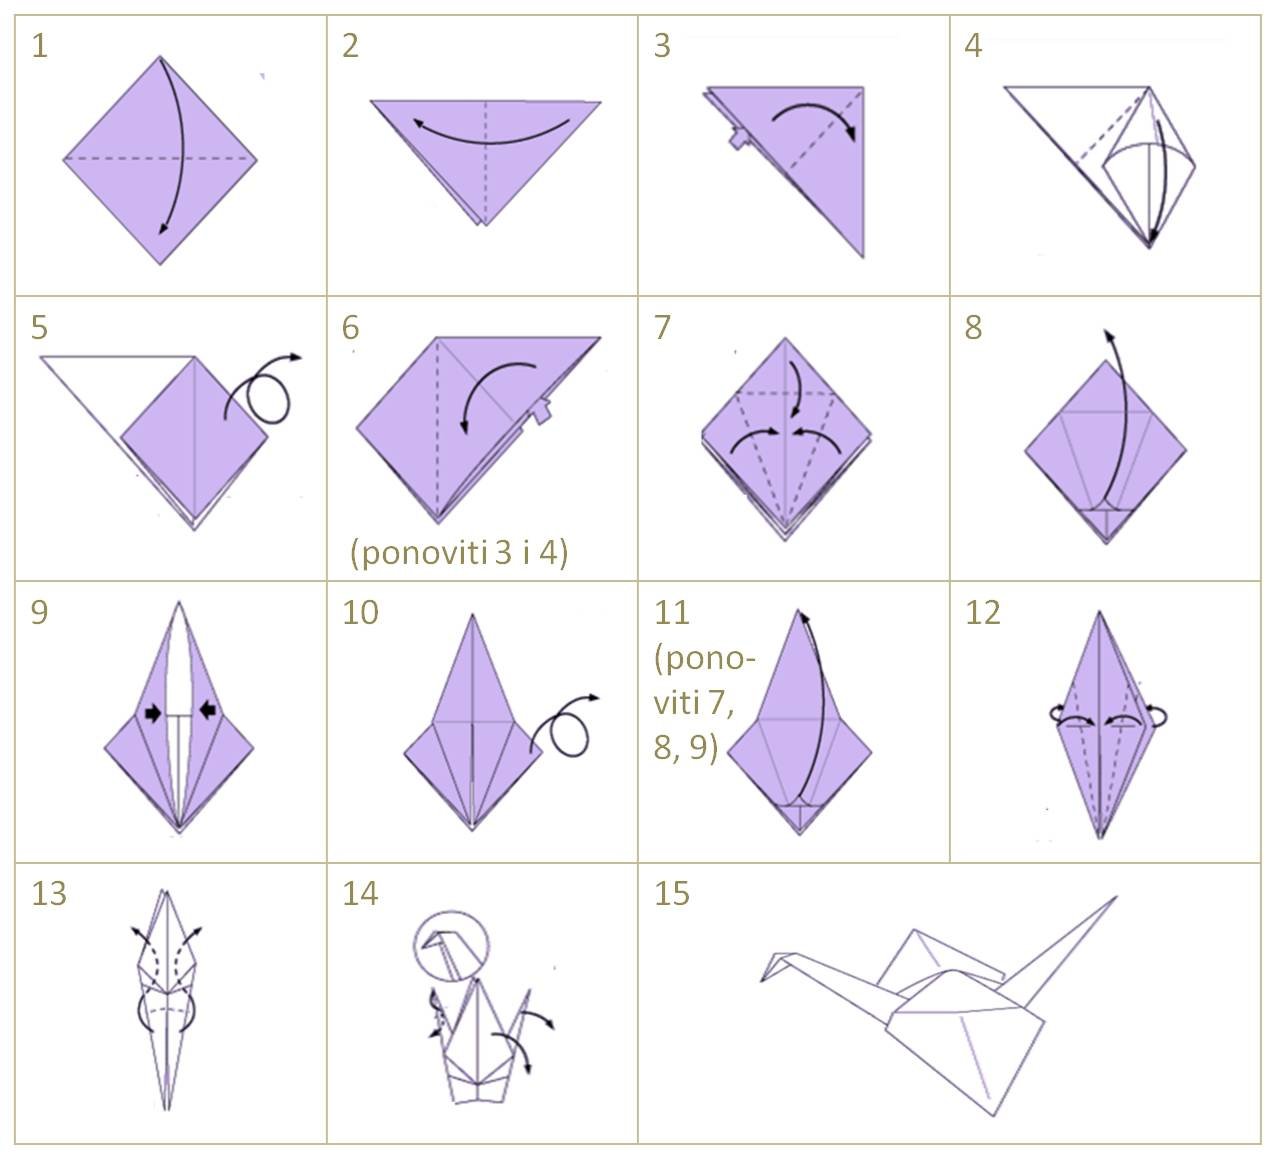 Оригами журавлик а4. Как делать журавликов из бумаги. Как складывать журавлика из бумаги. Схема оригами Журавлик из бумаги. Как сложить журавлика из бумаги поэтапно.